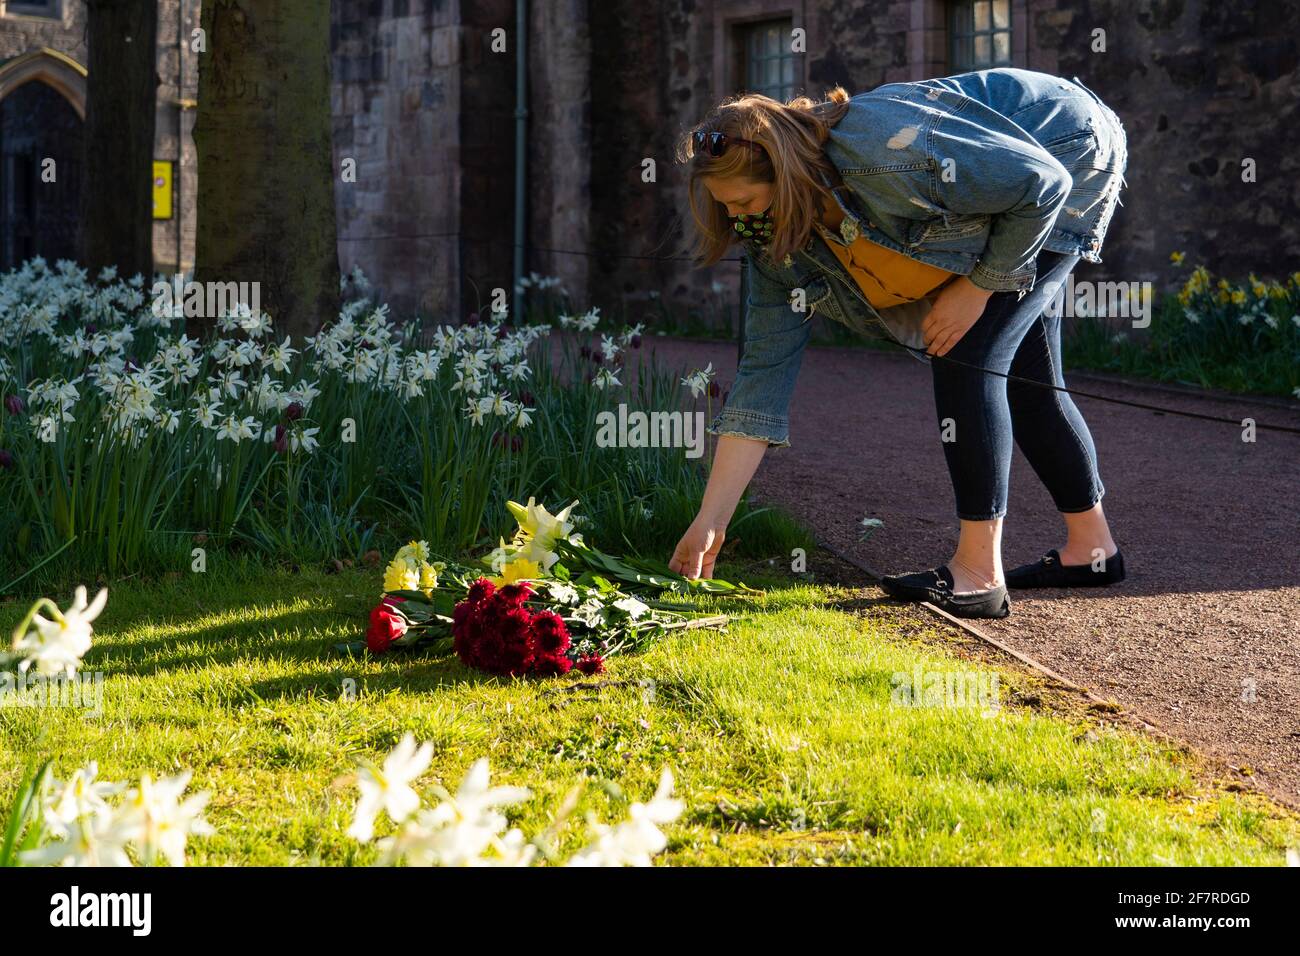 Edimburgo, Escocia, Reino Unido. 9 de abril de 2021. Las banderas vuelan hoy a media asta en Edimburgo, a la noticia de la muerte del príncipe Felipe el Duque de Edimburgo. Pic; La mujer rinde homenaje floral en el jardín junto al Palacio de Holyroodhouse. Iain Masterton/Alamy Live News Foto de stock